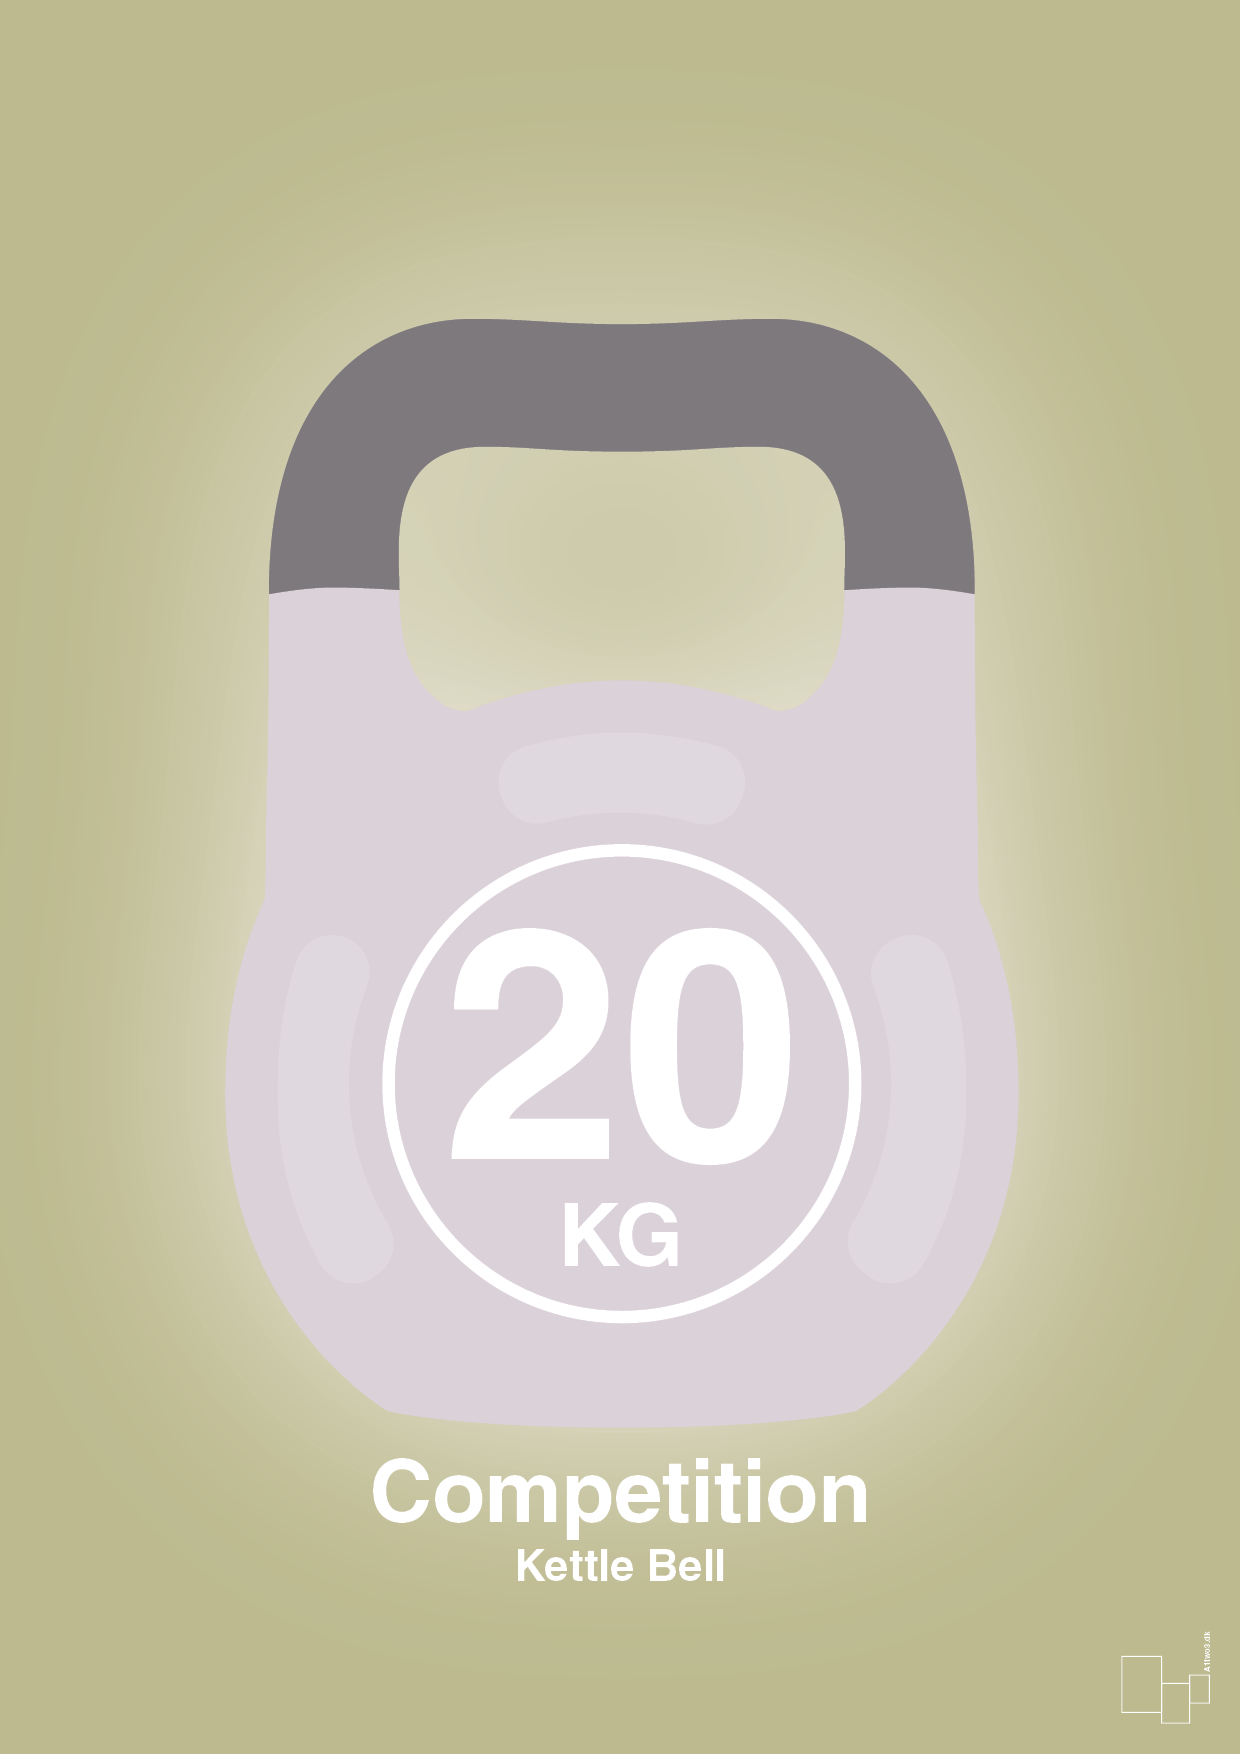 kettle bell 20 kg - competition color - Plakat med Grafik i Back to Nature